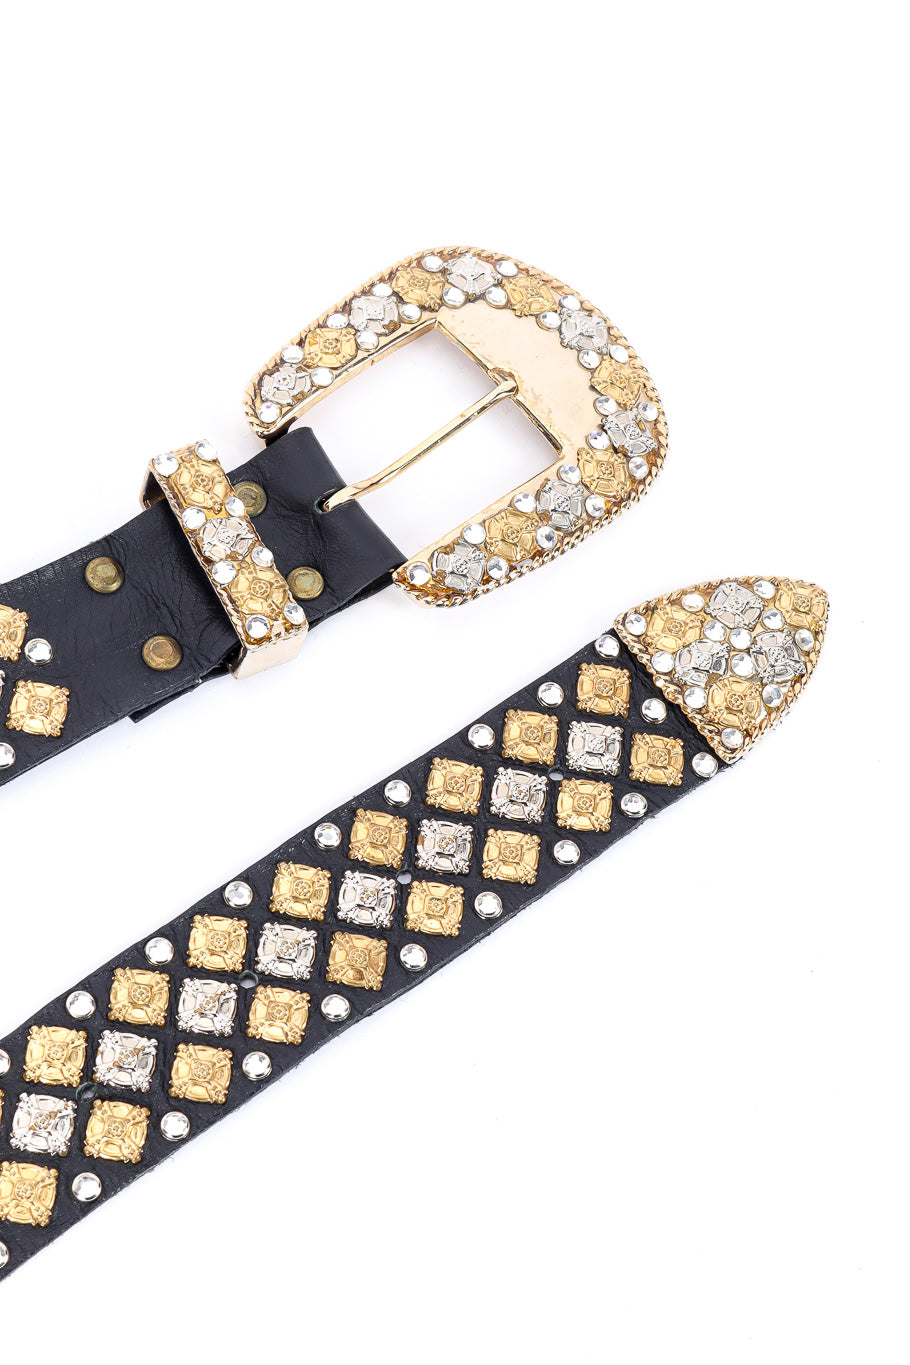 Michael Morrison crystal studded leather belt details @recessla